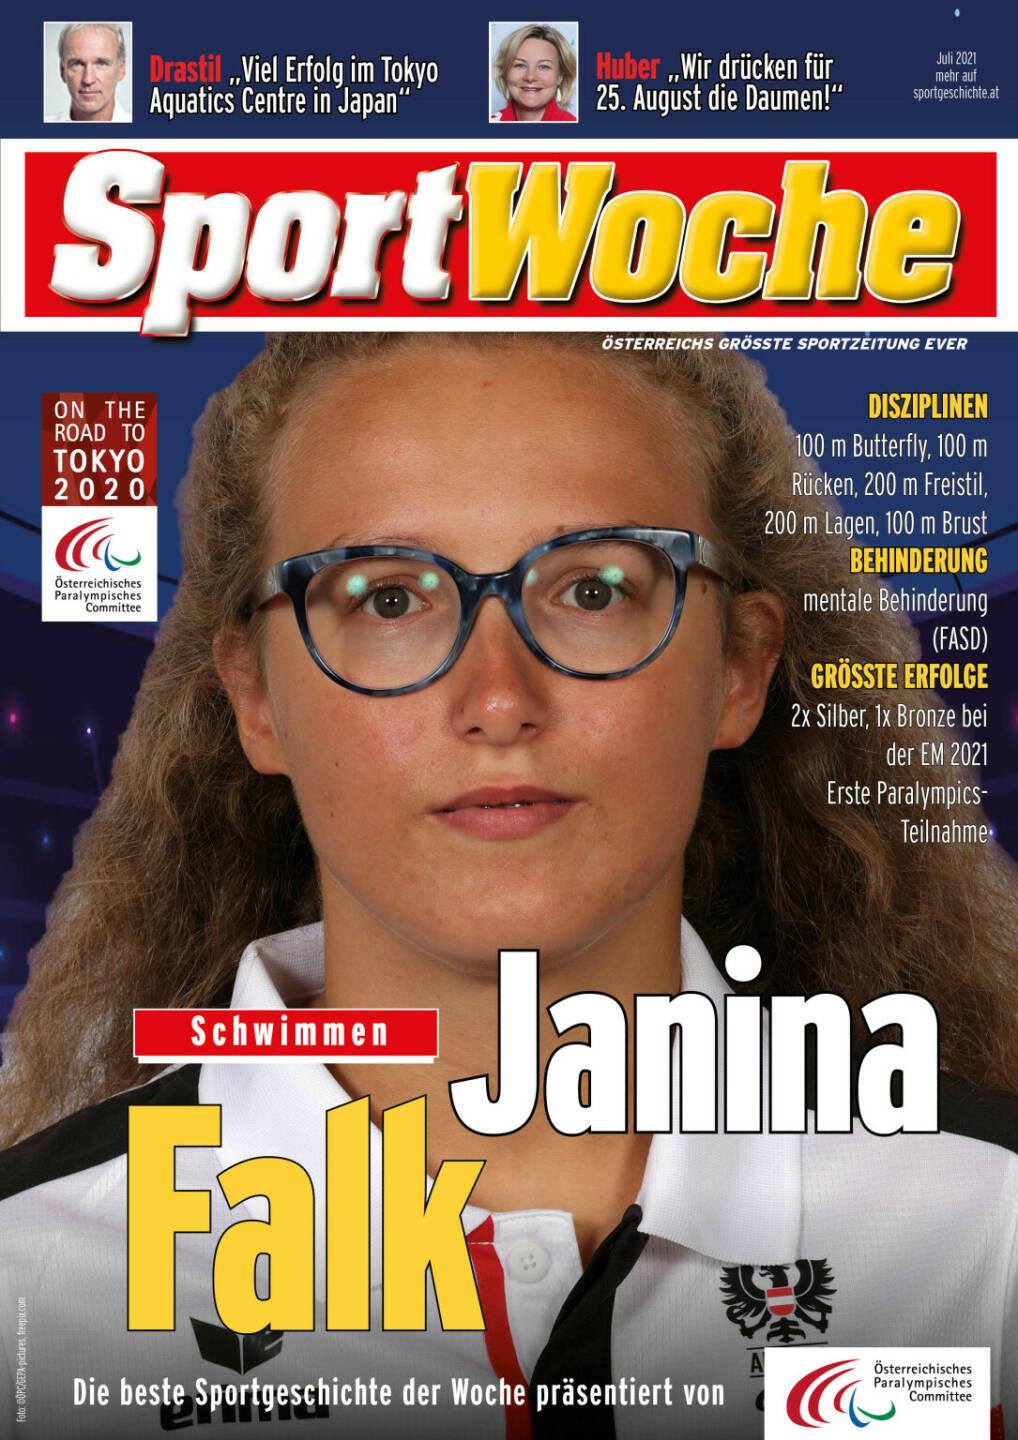 Janina Falk - Disziplinen 100 m Butterfly, 100 m Rücken, 200 m Freistil, 200 m Lagen, 100 m Brust, Behinderung mentale Behinderung (FASD), Größte Erfolge 2x Silber, 1x Bronze bei der EM 2021, Erste Paralympics-Teilnahme